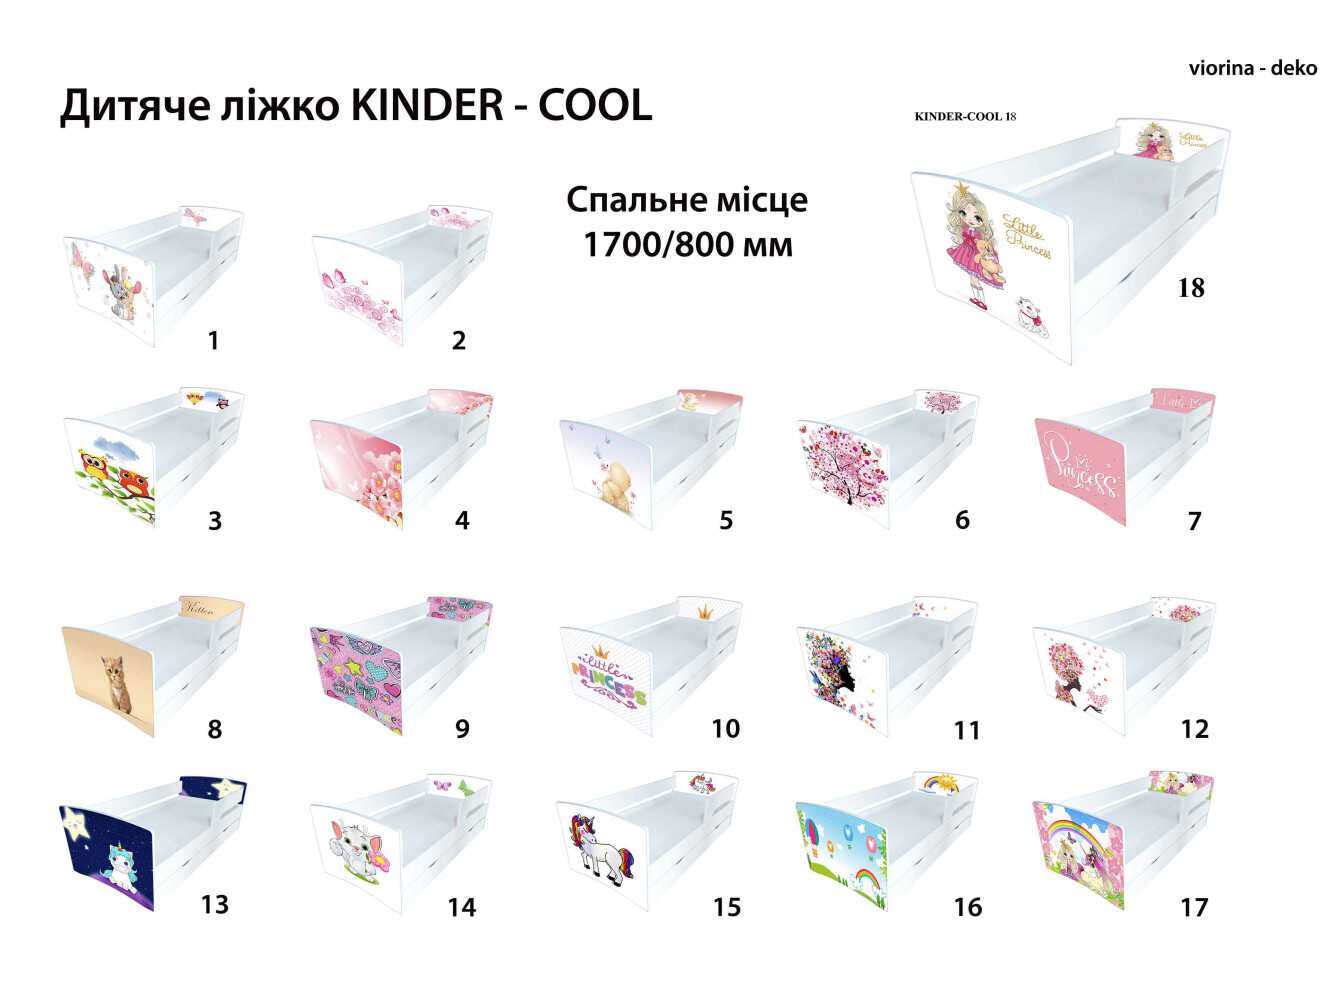 Ліжко Кіндер Кул 18 Принцеса / KINDER-COOL 18 Princess